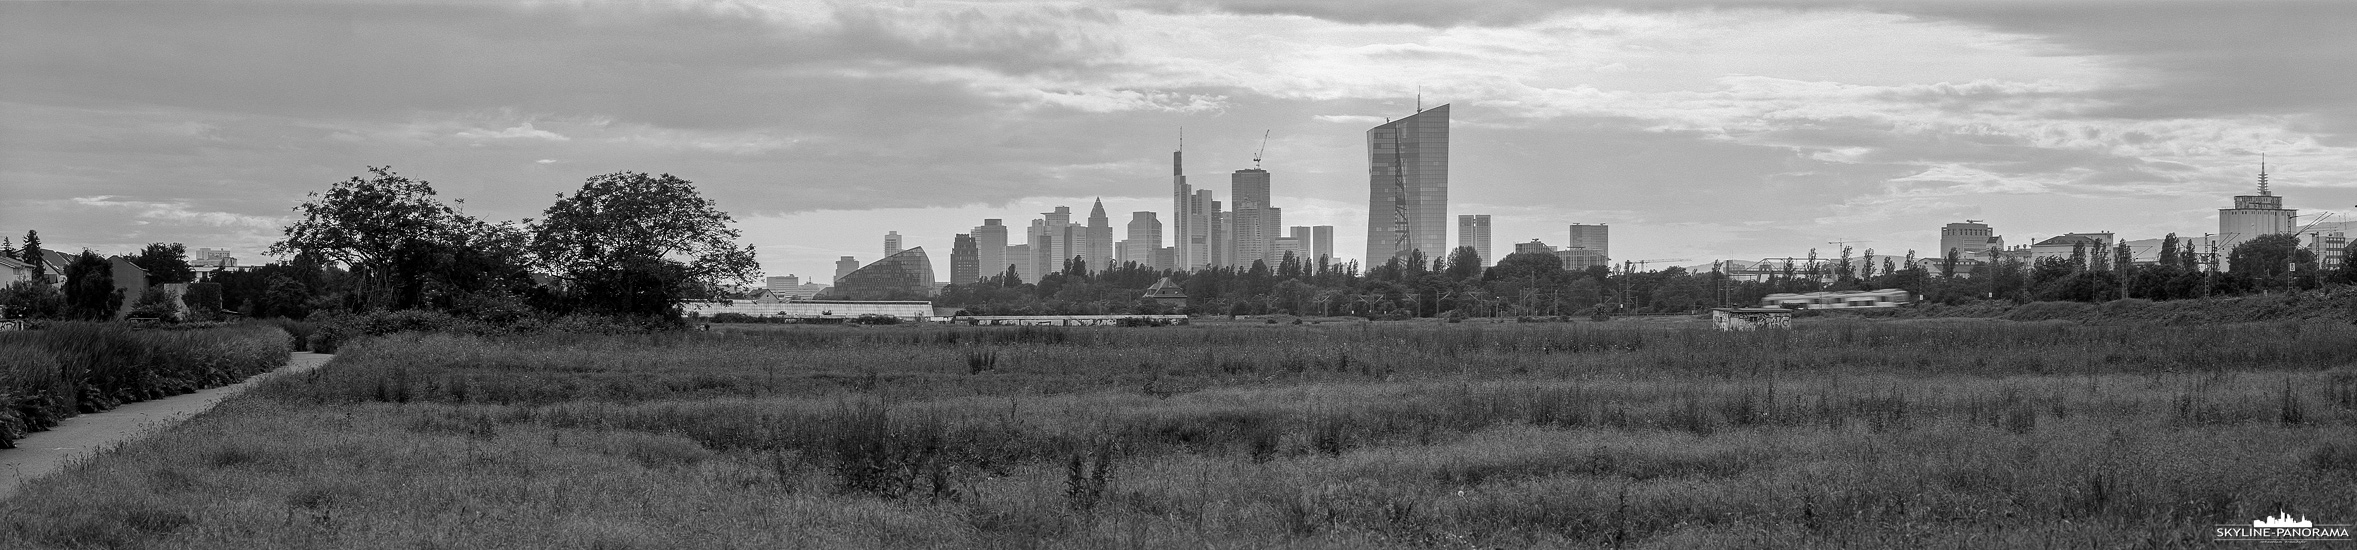 6x24 Panorama - Blick auf die Frankfurter Skyline vom Ende der Oberräder Felder. Die Aufnahme entstand analog auf Schwarzweiß-Film im Panoramaformat 6x24, erstellt wurde das Panorama mit einer Shen Hao TFC 624 Panoramakamera und einem 300mm Fachobjektiv von Rodenstock. 